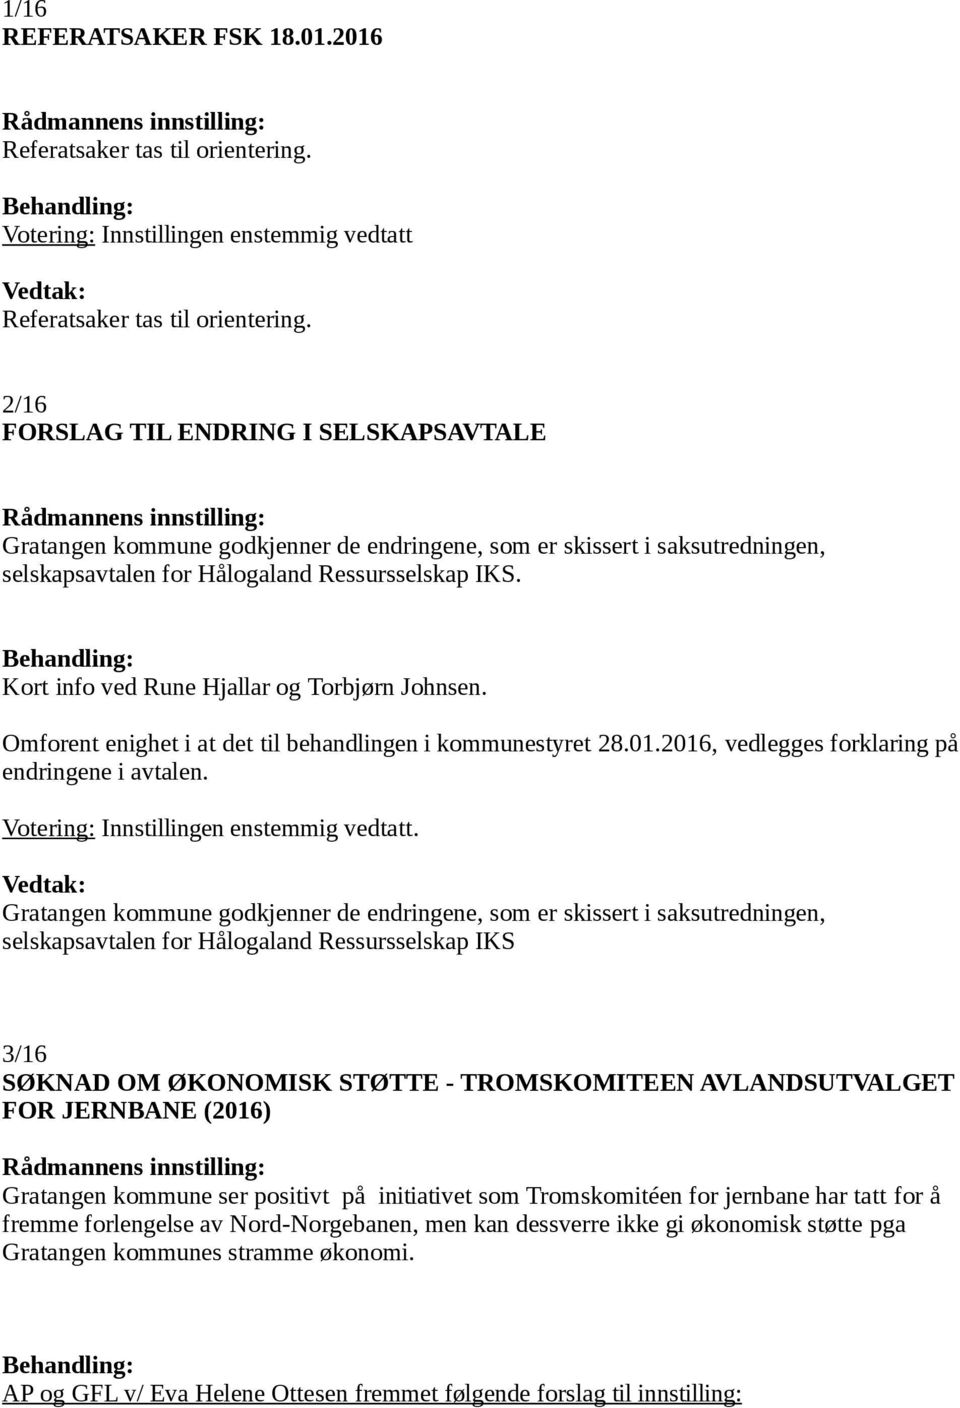 Kort info ved Rune Hjallar og Torbjørn Johnsen. Omforent enighet i at det til behandlingen i kommunestyret 28.01.2016, vedlegges forklaring på endringene i avtalen.